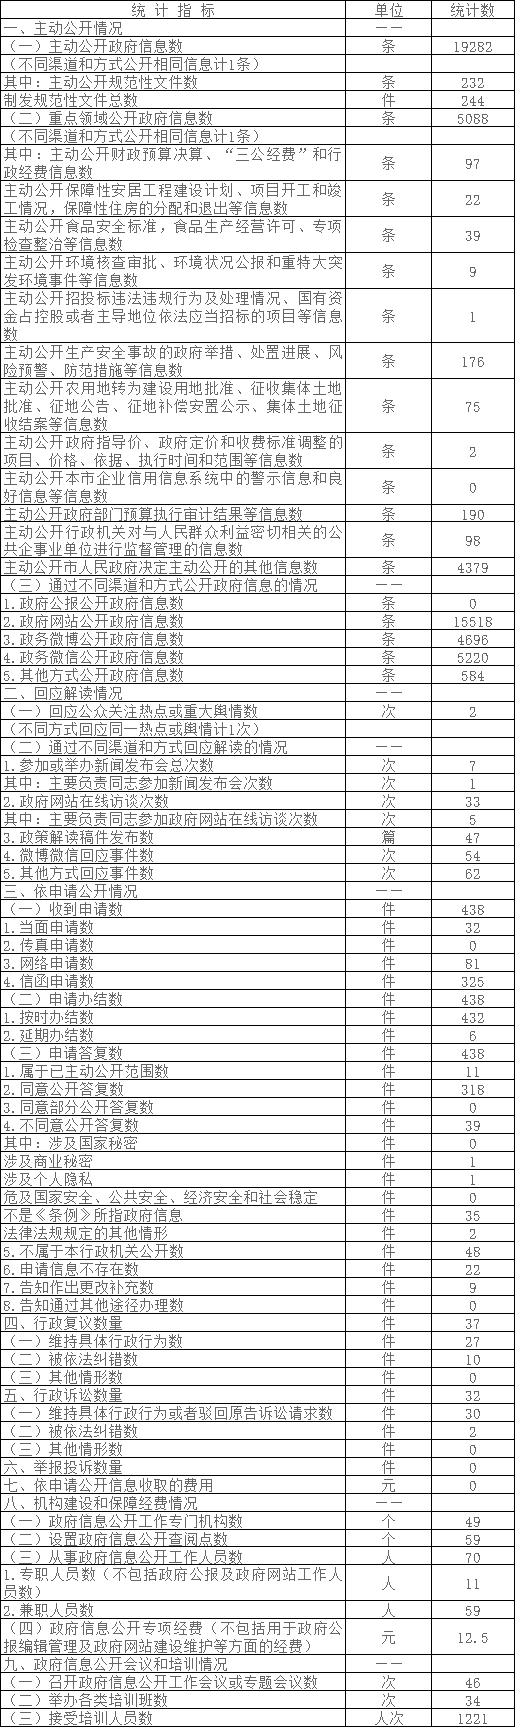 北京市大兴区政府信息公开情况统计表(2016年度)